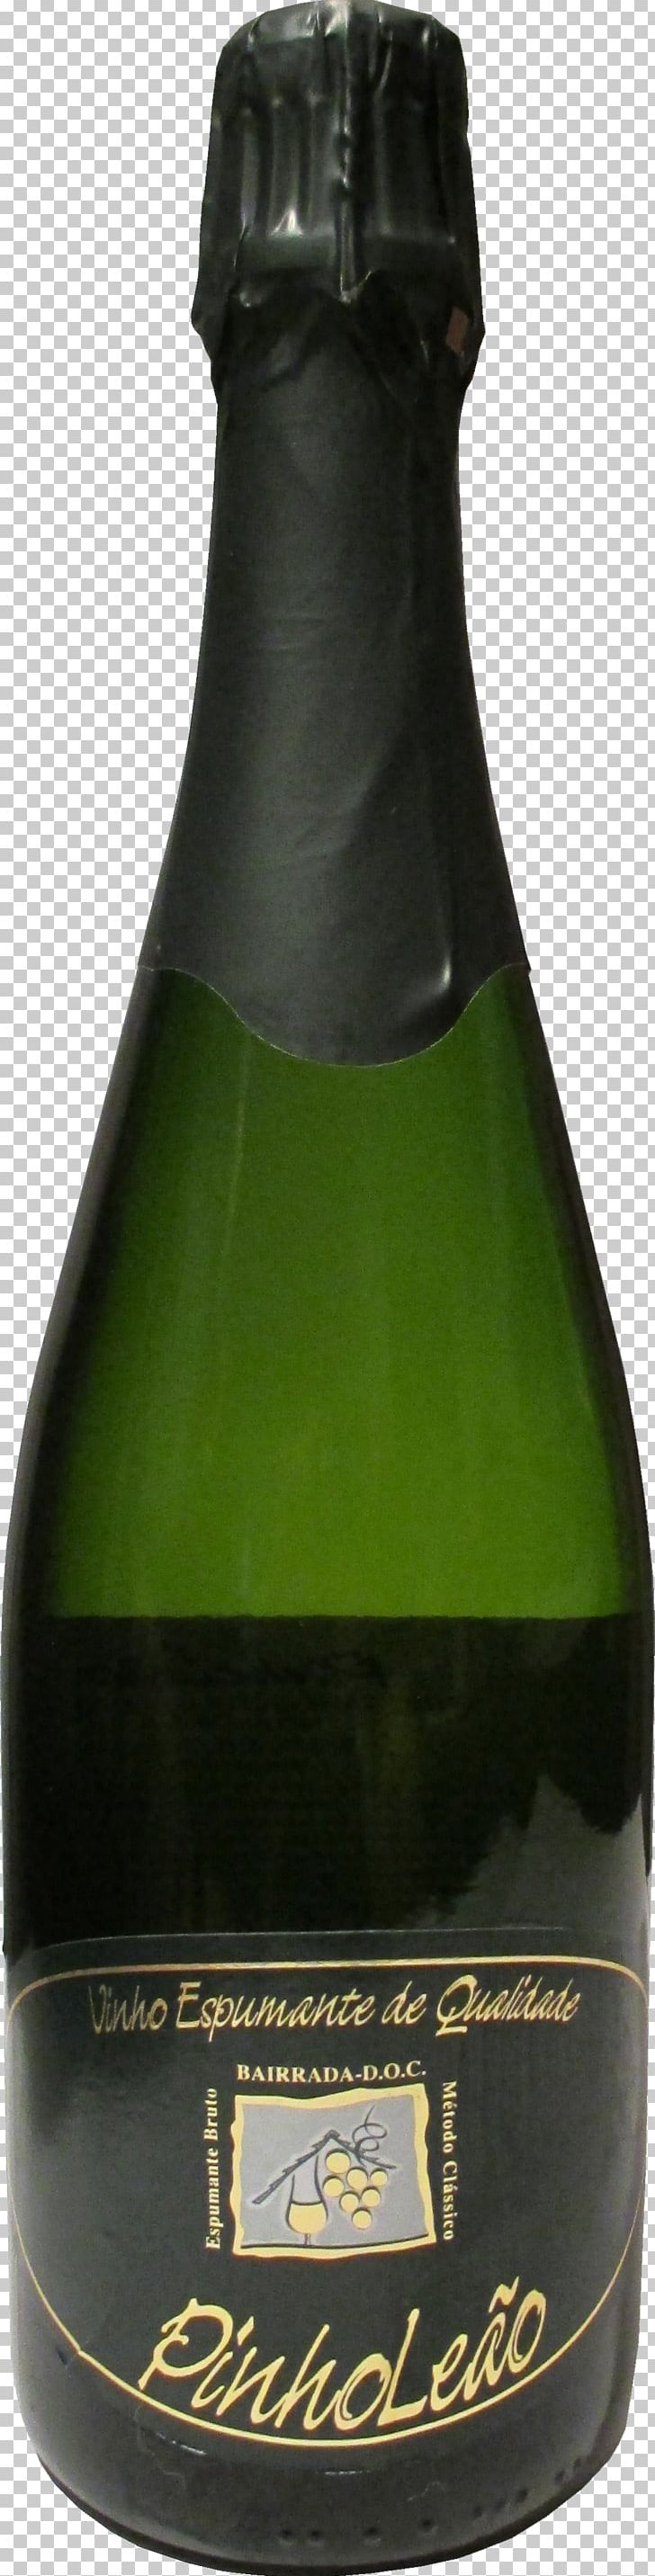 Champagne Dessert Wine Glass Bottle Liqueur PNG, Clipart, Alcoholic Beverage, Beer, Beer Bottle, Bottle, Champagne Free PNG Download